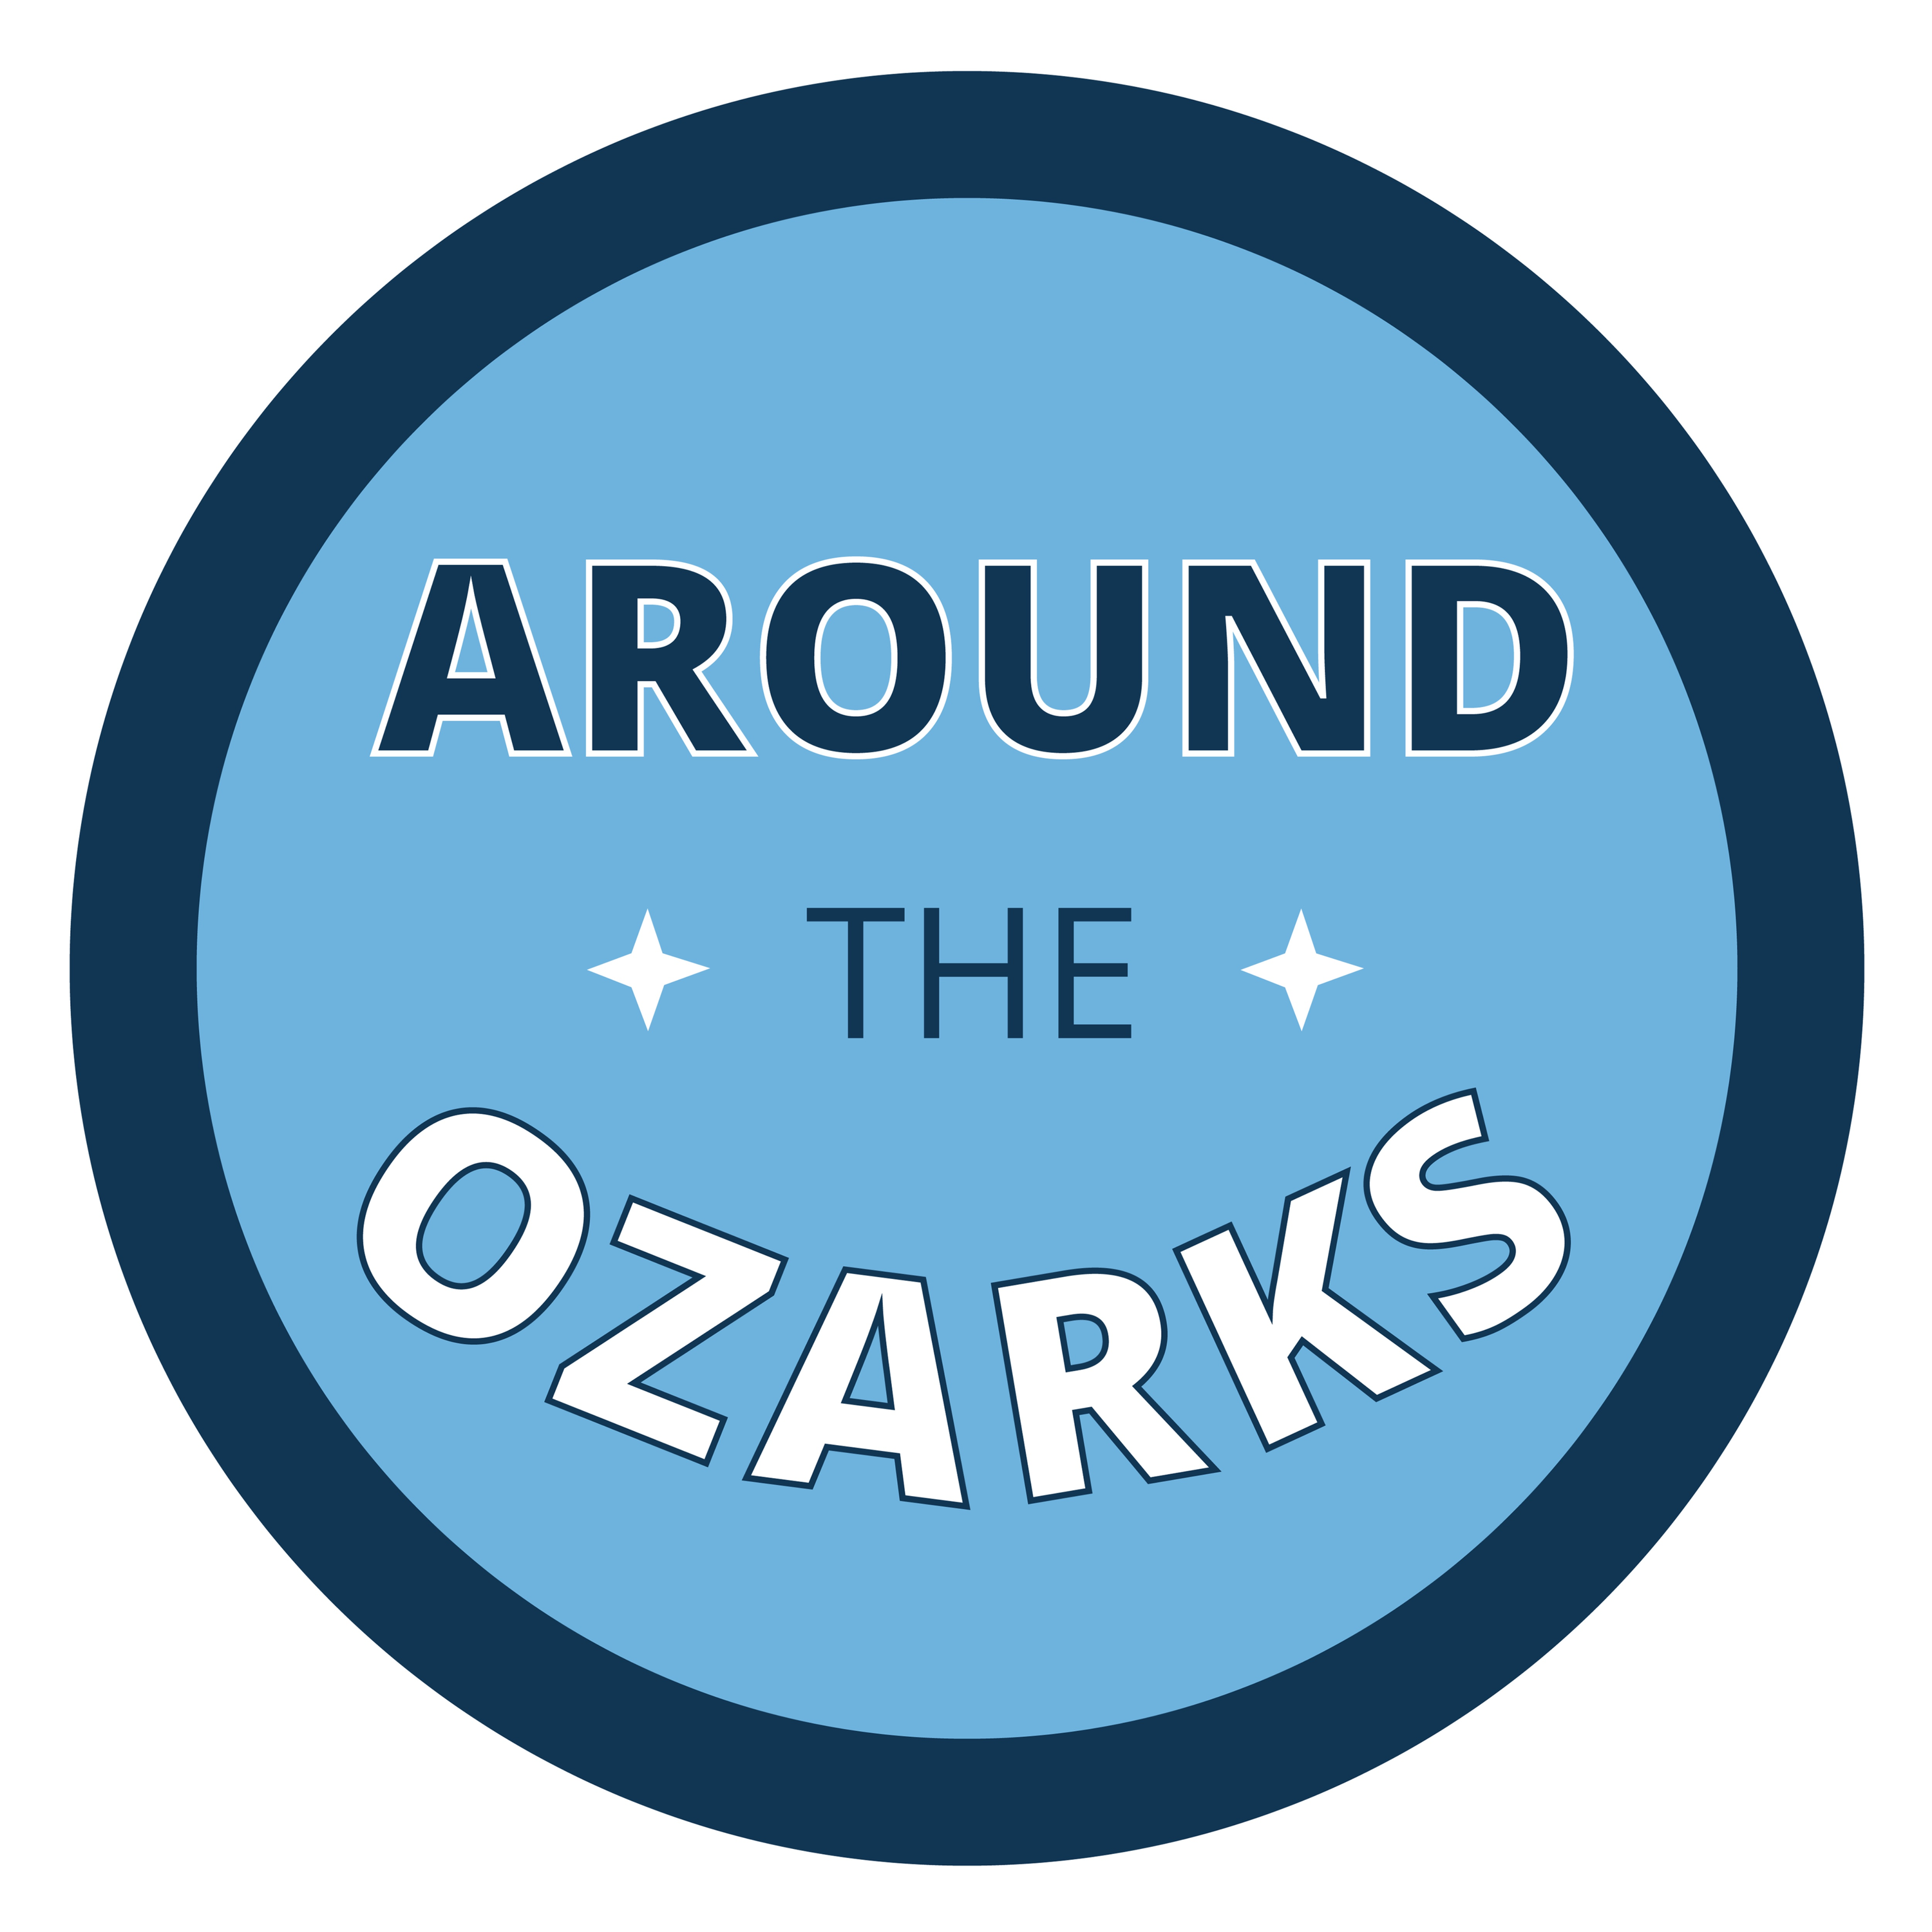 Around The Ozarks Spotlight -- Ryan Savage - Executive Director of Beyond Healing